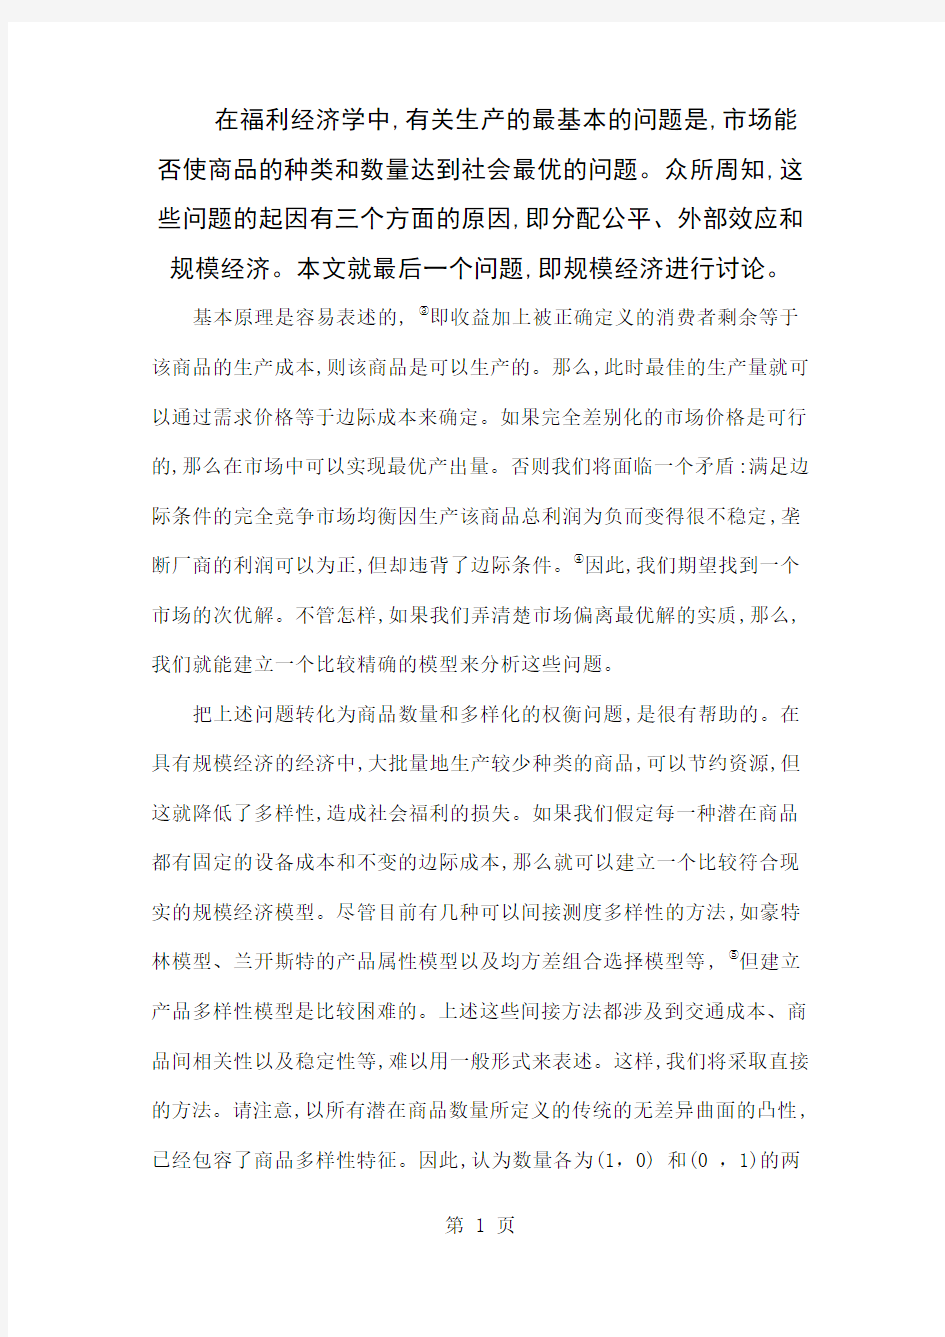 垄断性竞争和优化产品多样化中文版-18页word资料